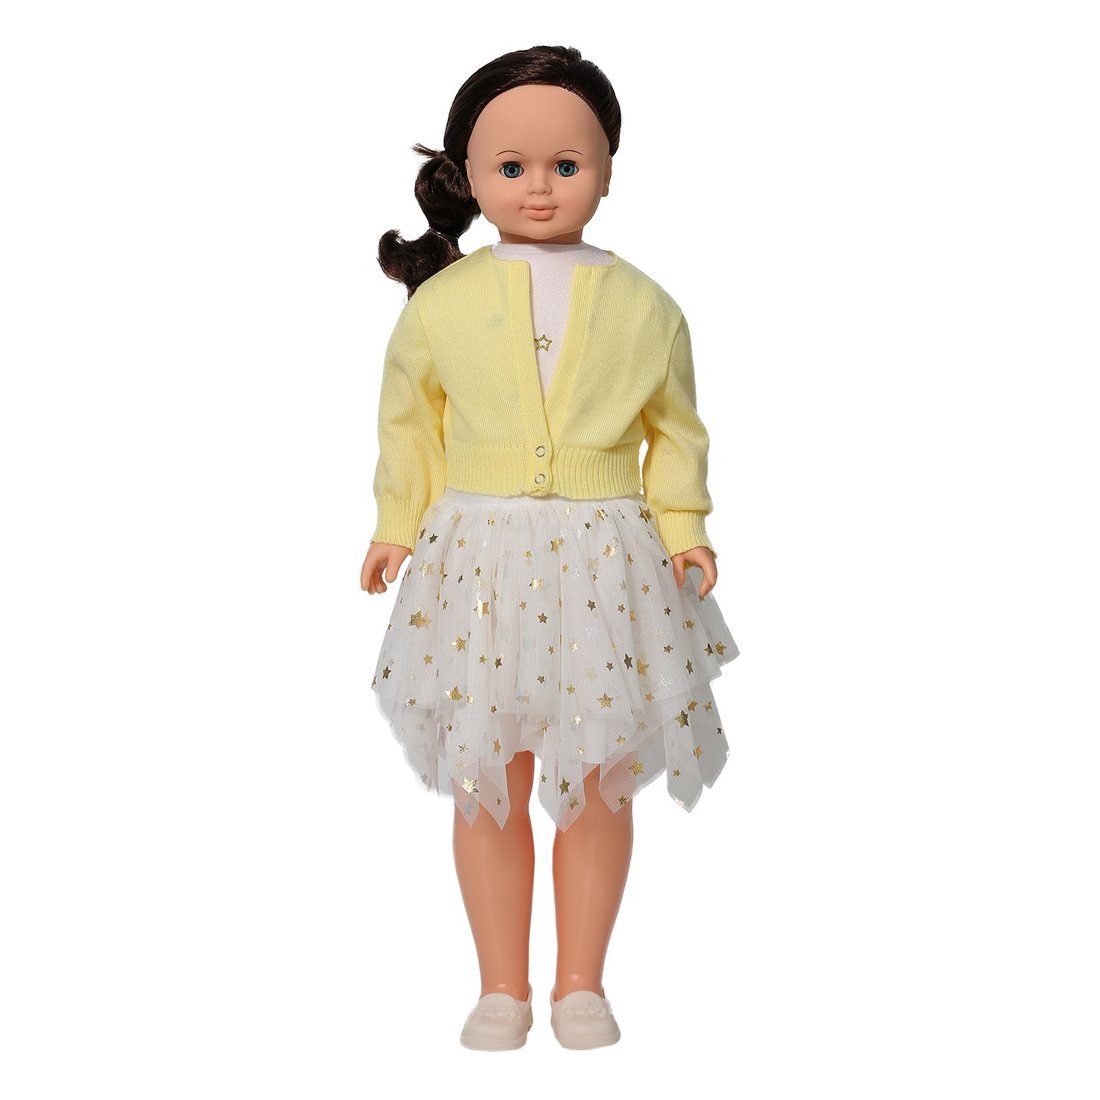 Кукла Снежана модница 4 озвученная 83 см В4141/о кукла весна в3658 о анна модница 1 озвученная